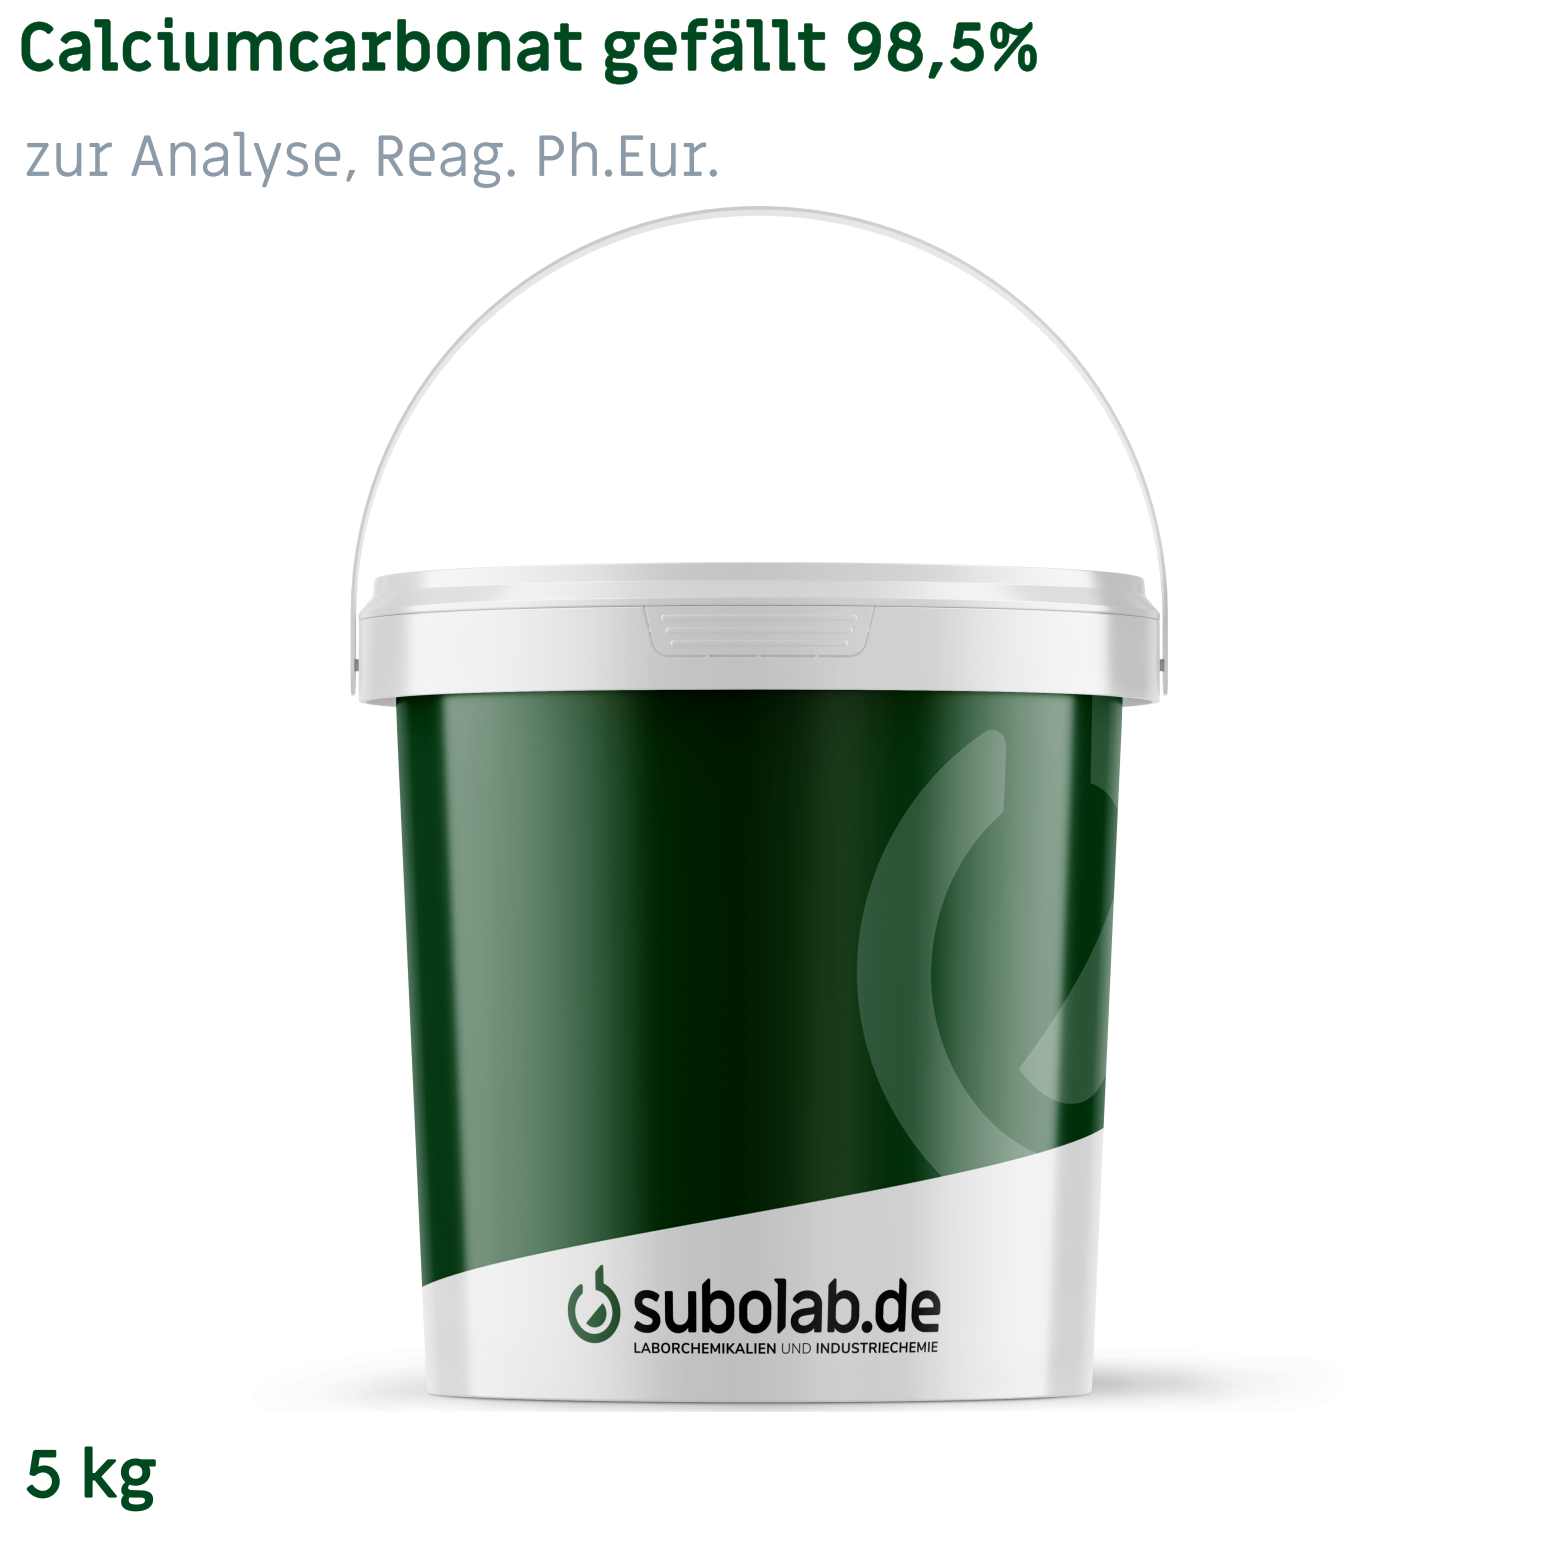 Bild von Calciumcarbonat gefällt 98,5% zur Analyse, Reag. Ph.Eur. (5 kg)